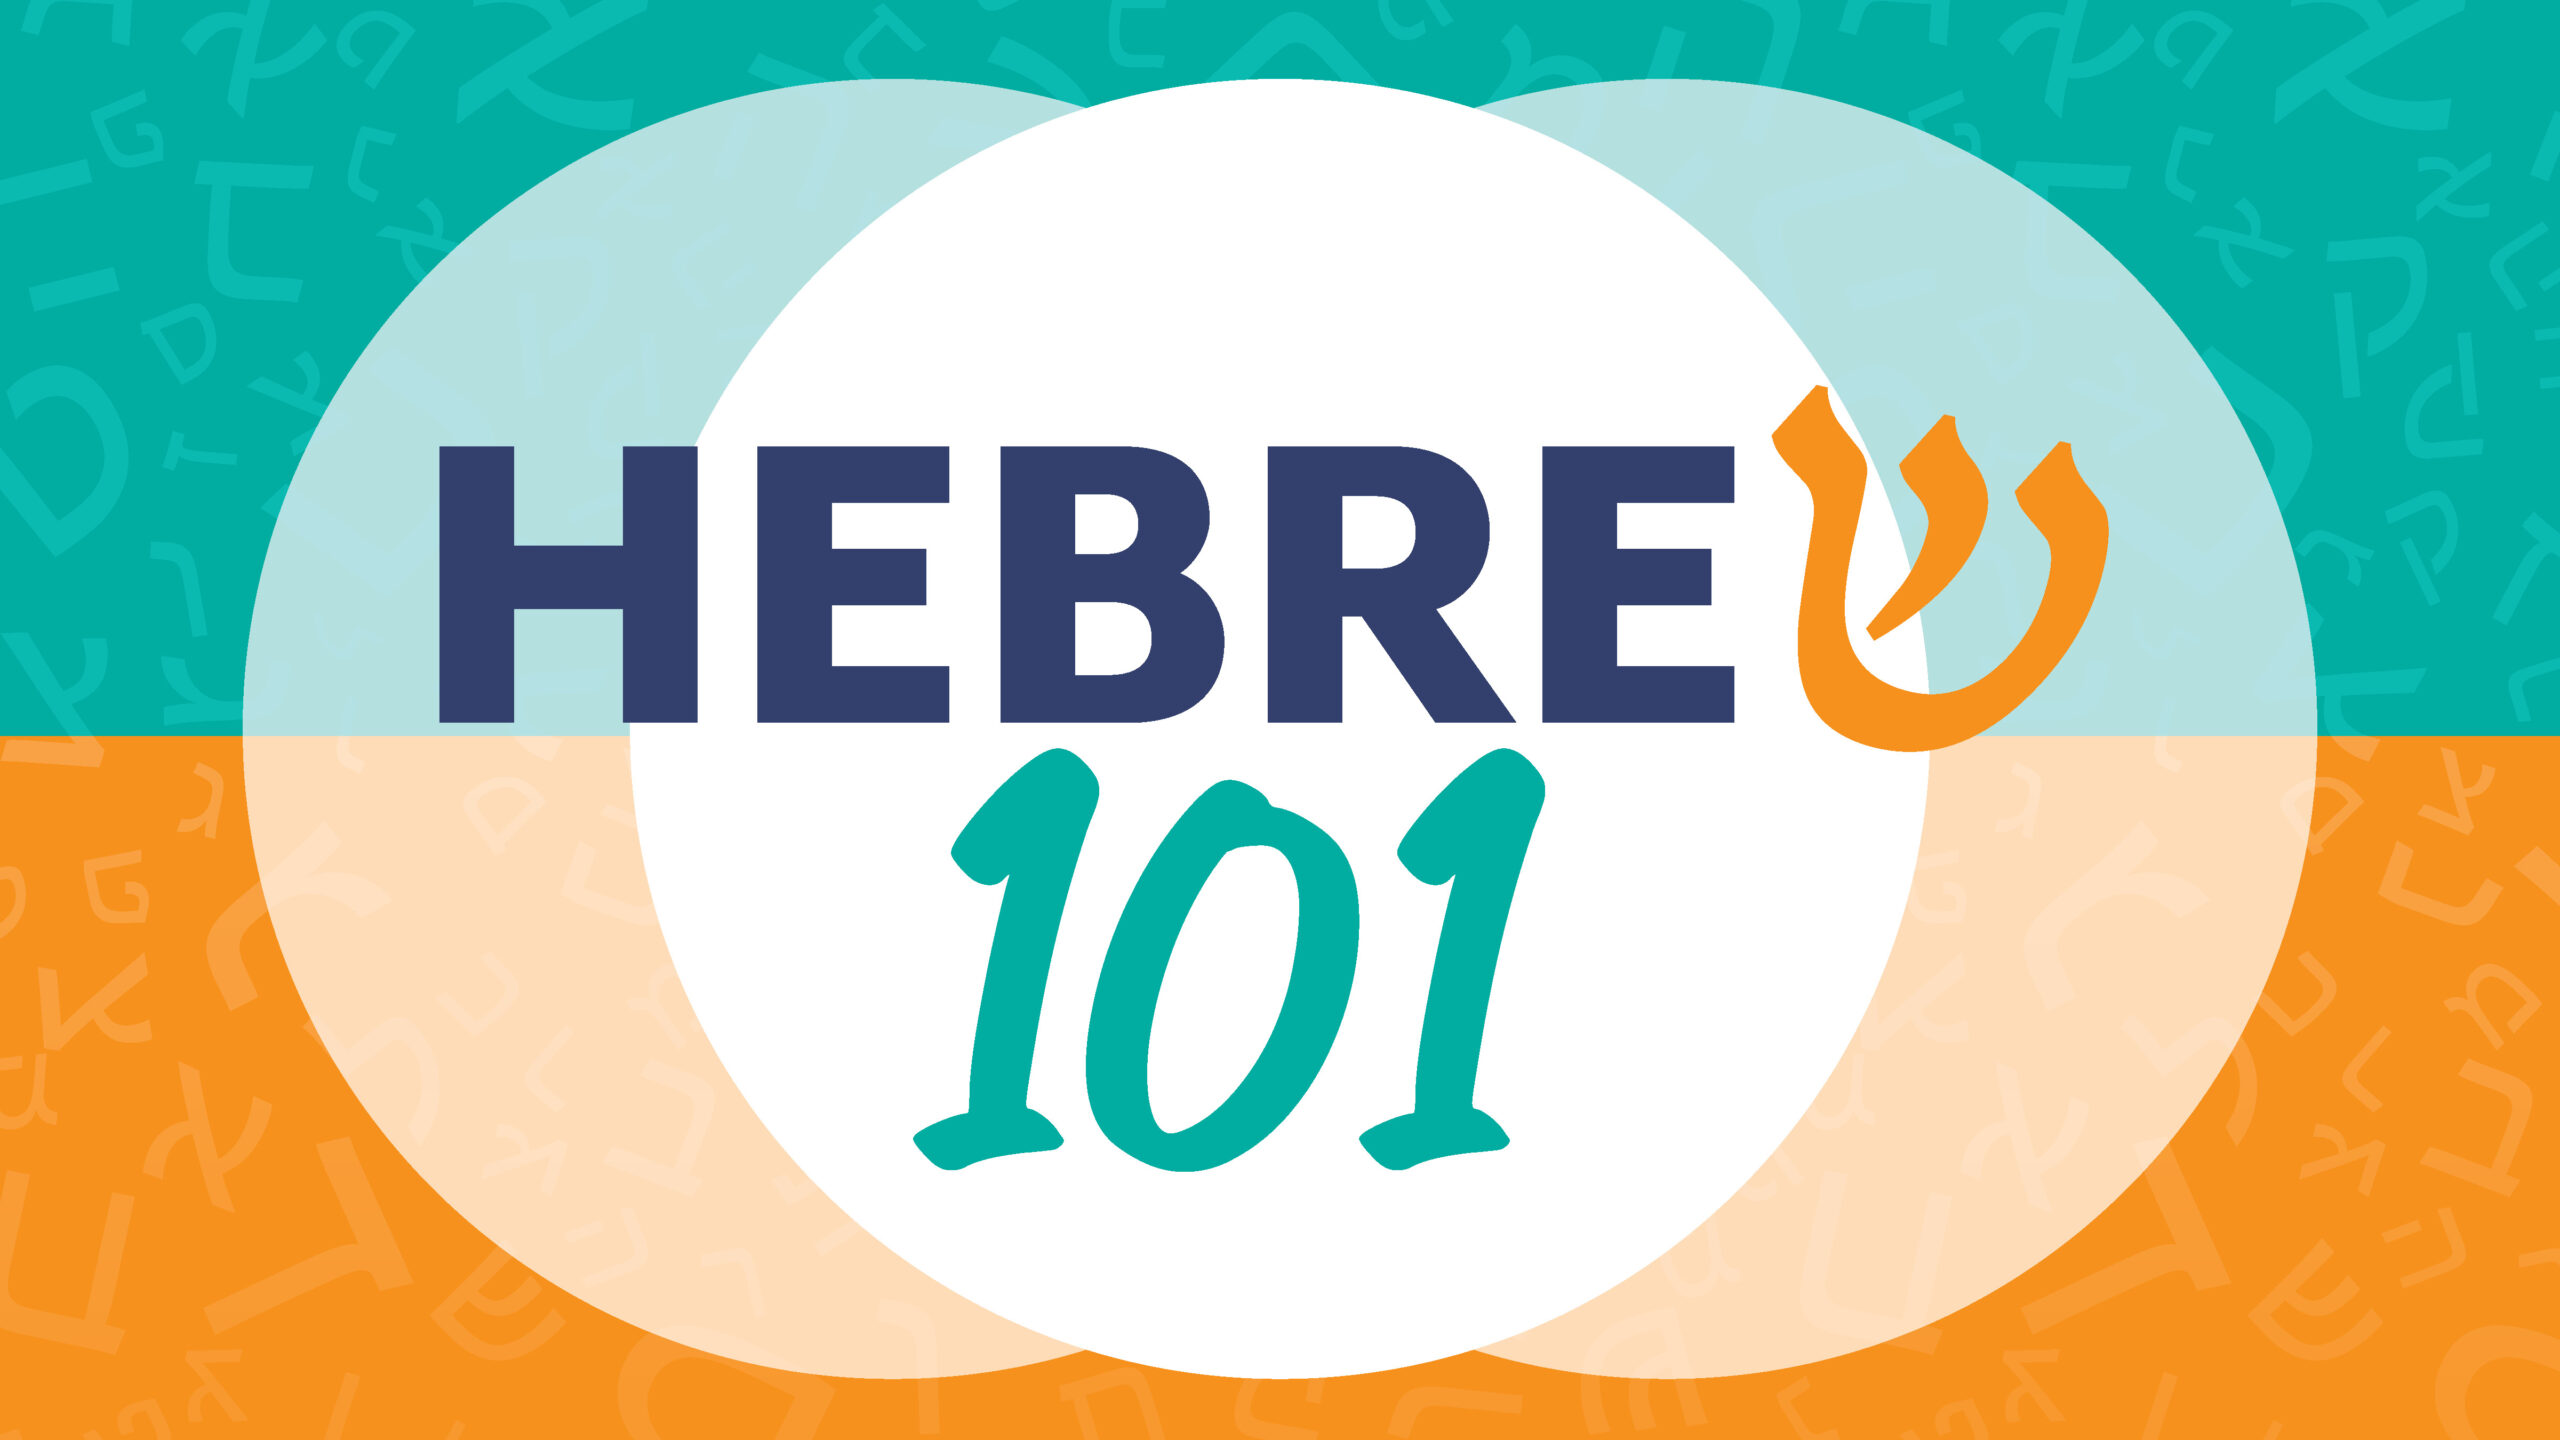 Hebrew 101 - hebrew 101 - hebrew 101 - hebrew 101 - he.